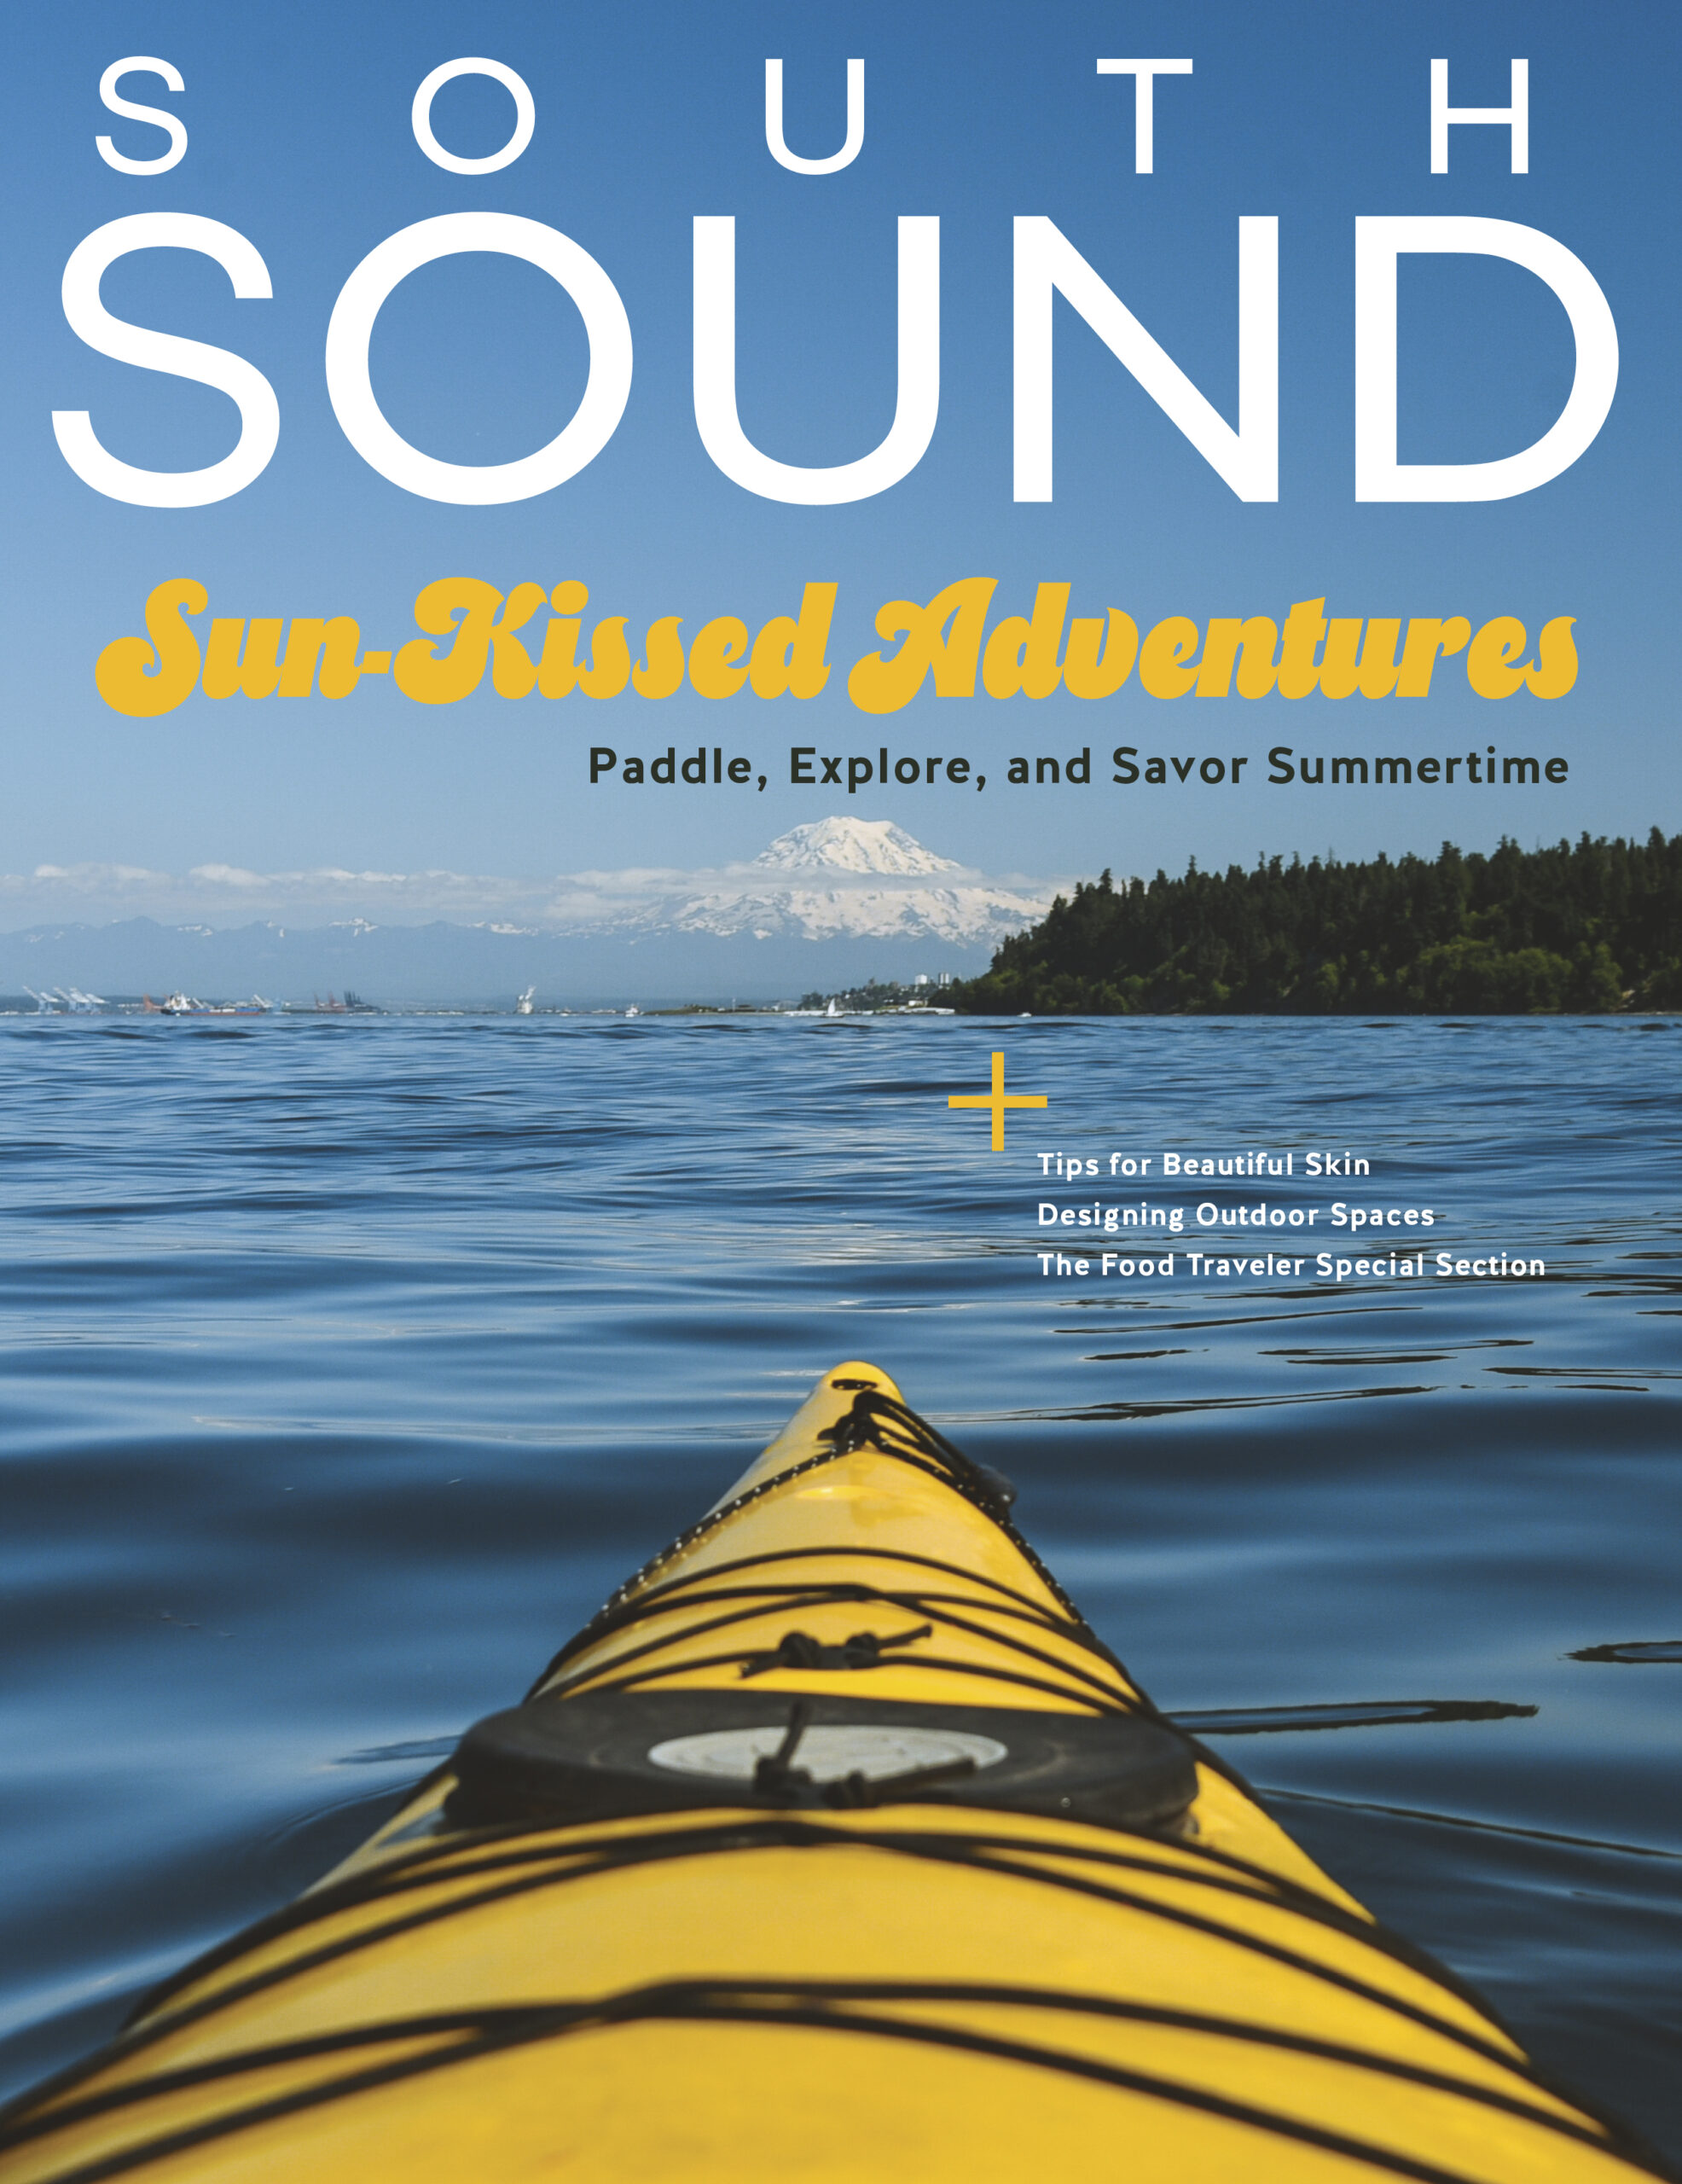 South Sound Magazine Cover